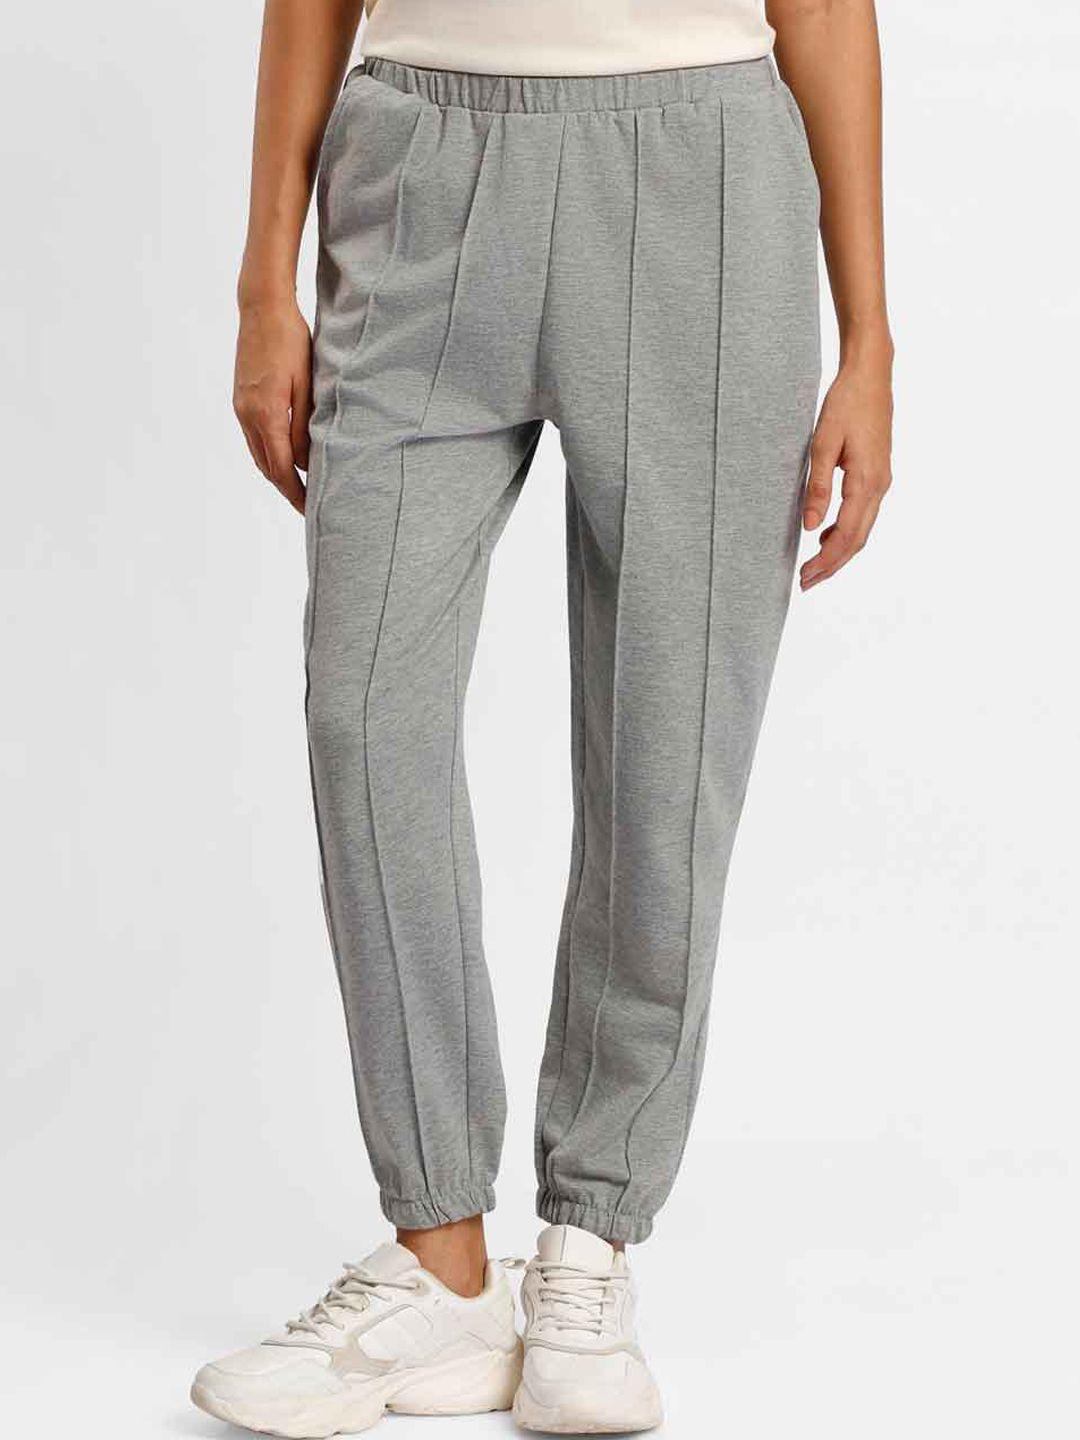 nobero women grey melange printed pleated trousers